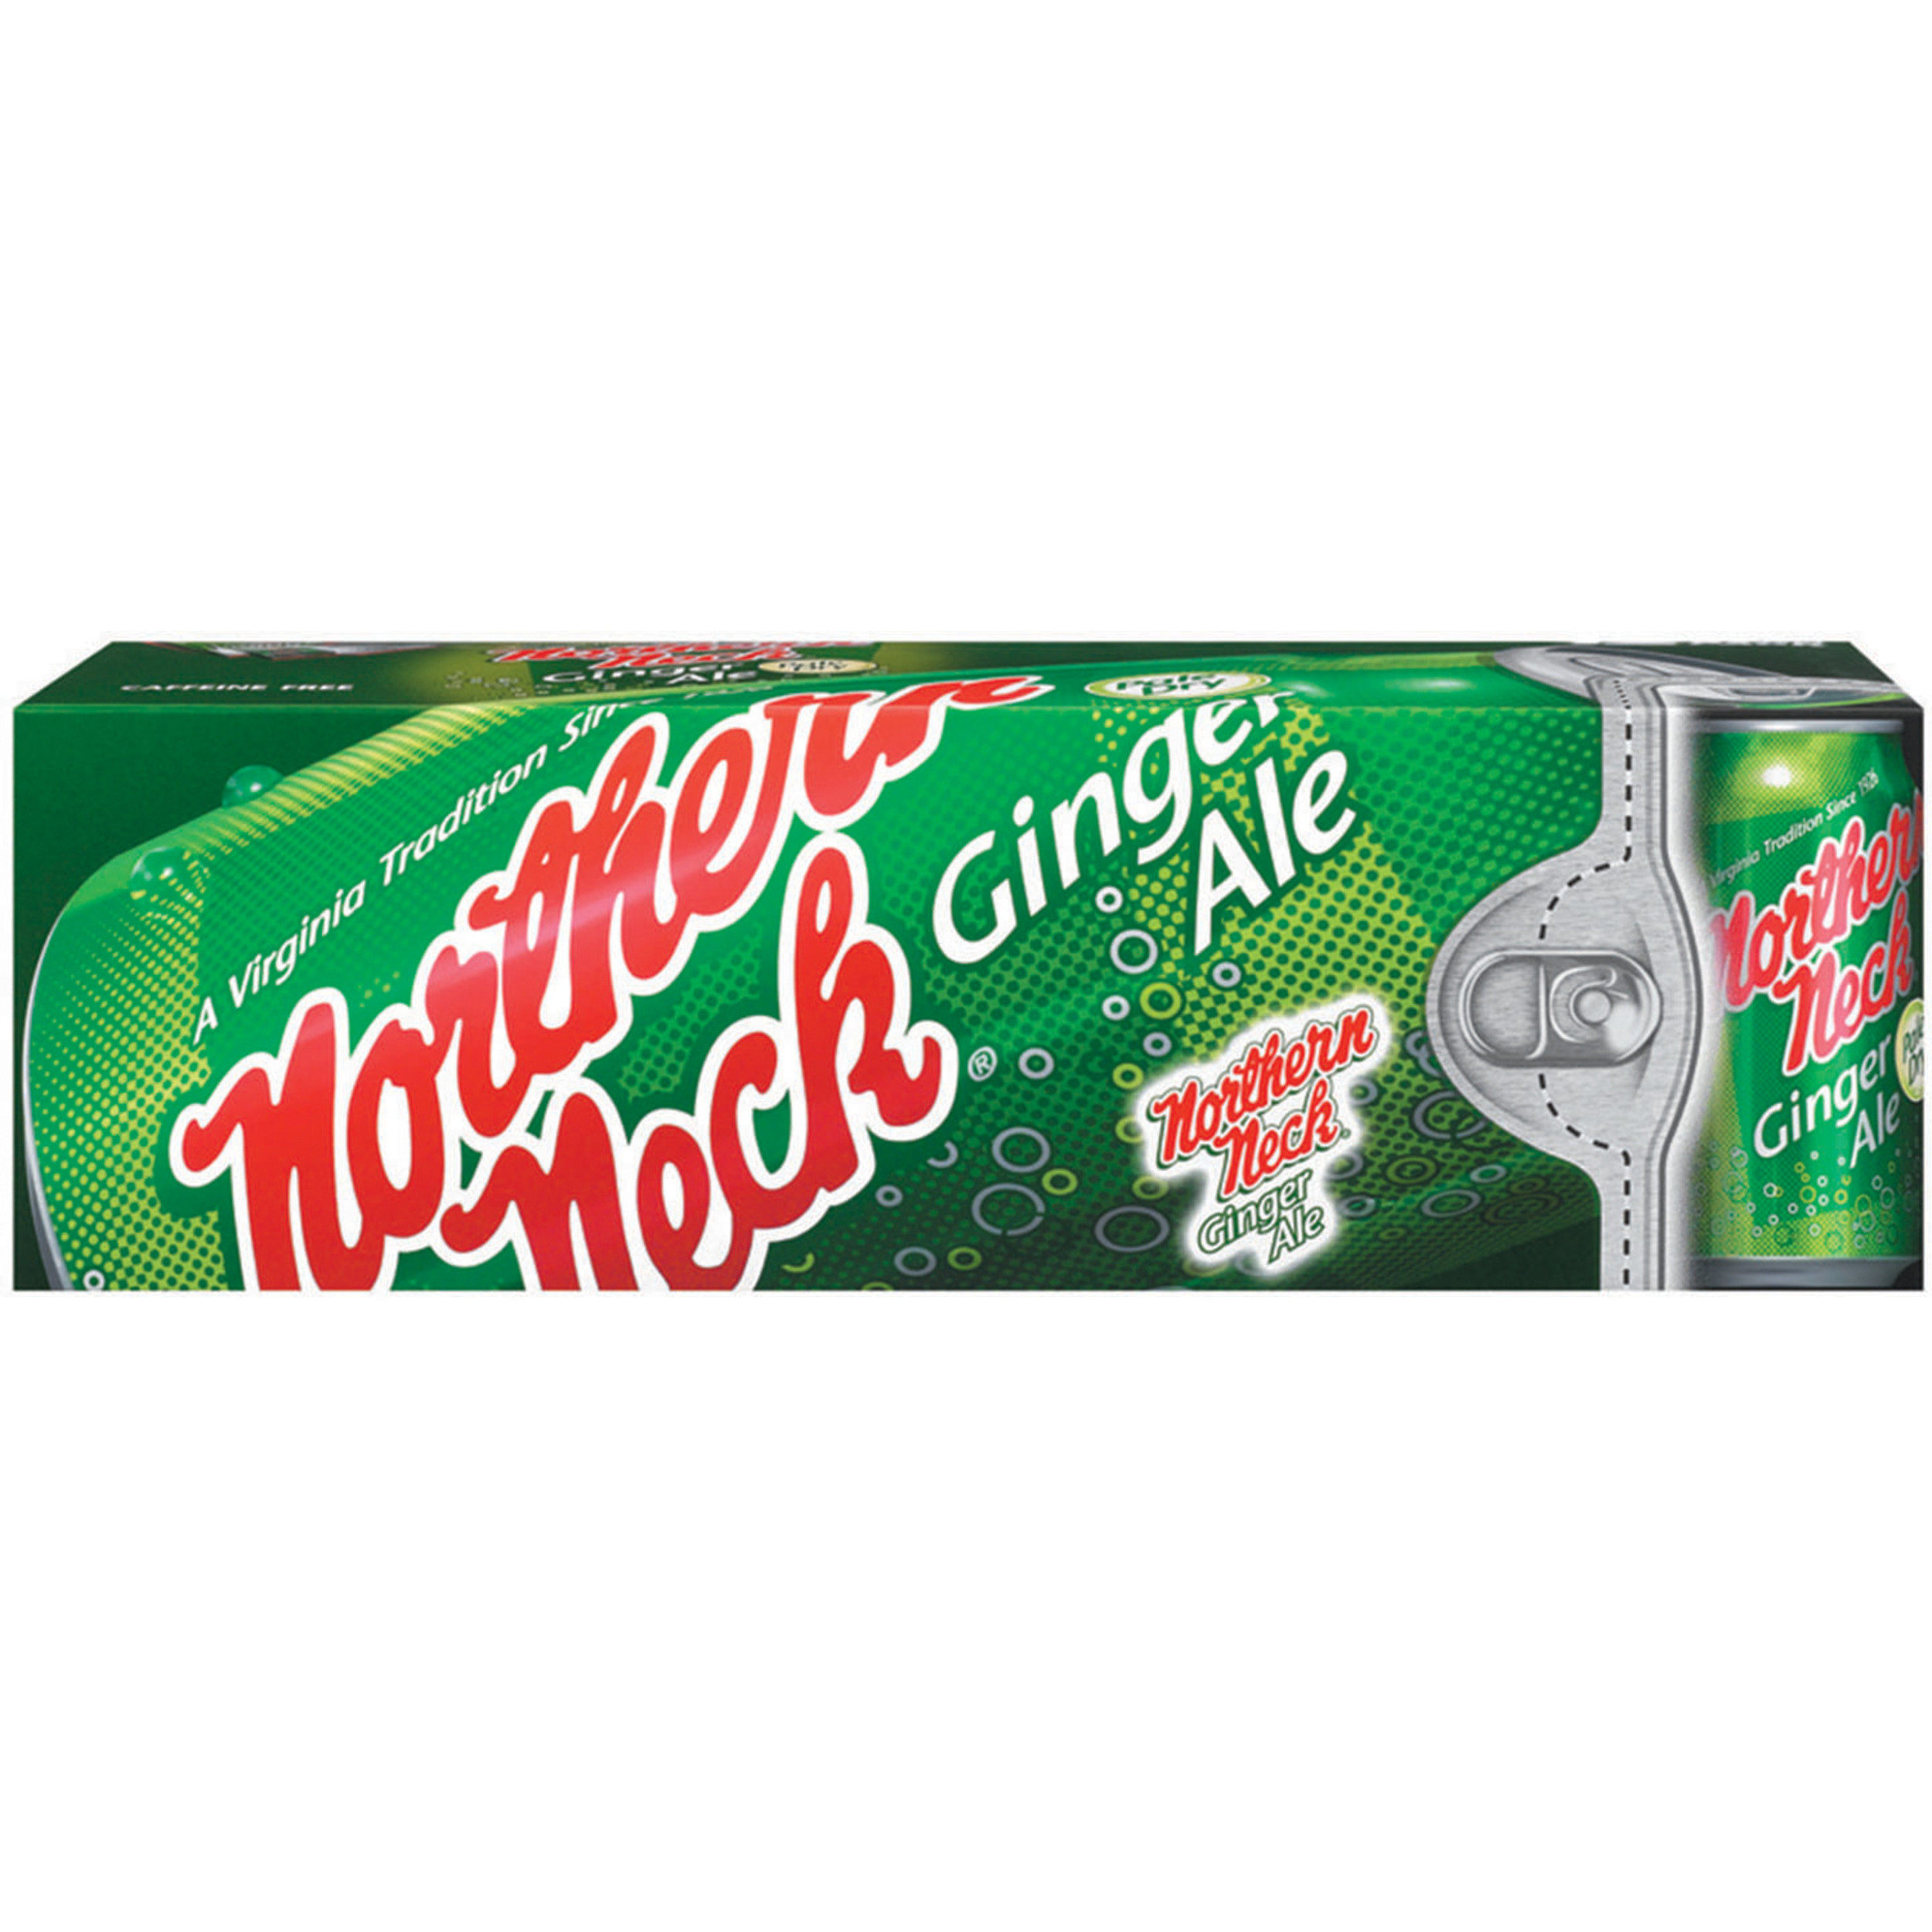 Northern Neck Ginger Ale Fridge Pack Cans, 12 fl oz, 12 Pack - image 2 of 4